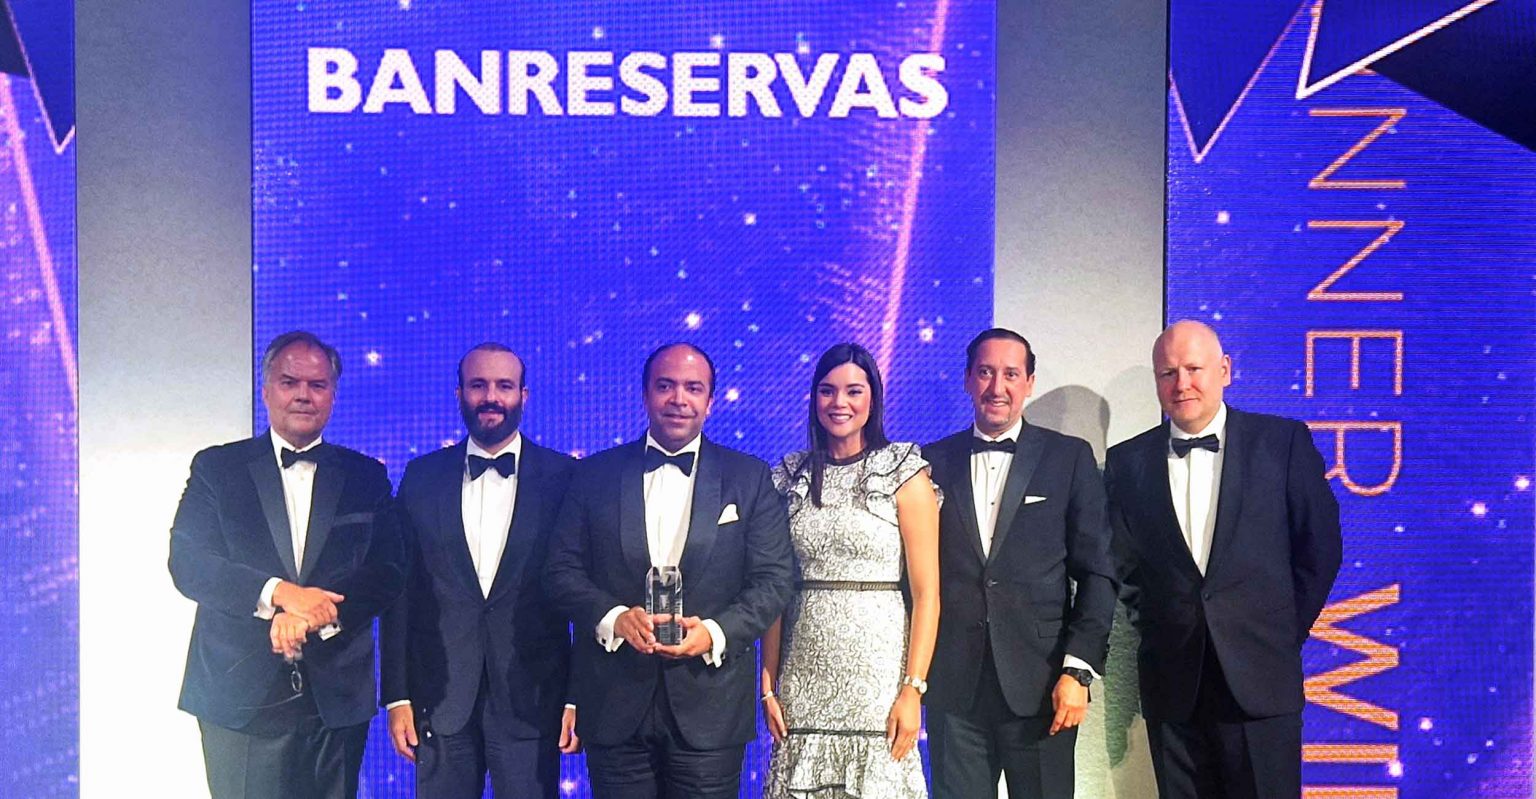 Euromoney premia a Banreservas como Mejor Banco de Republica Dominicana